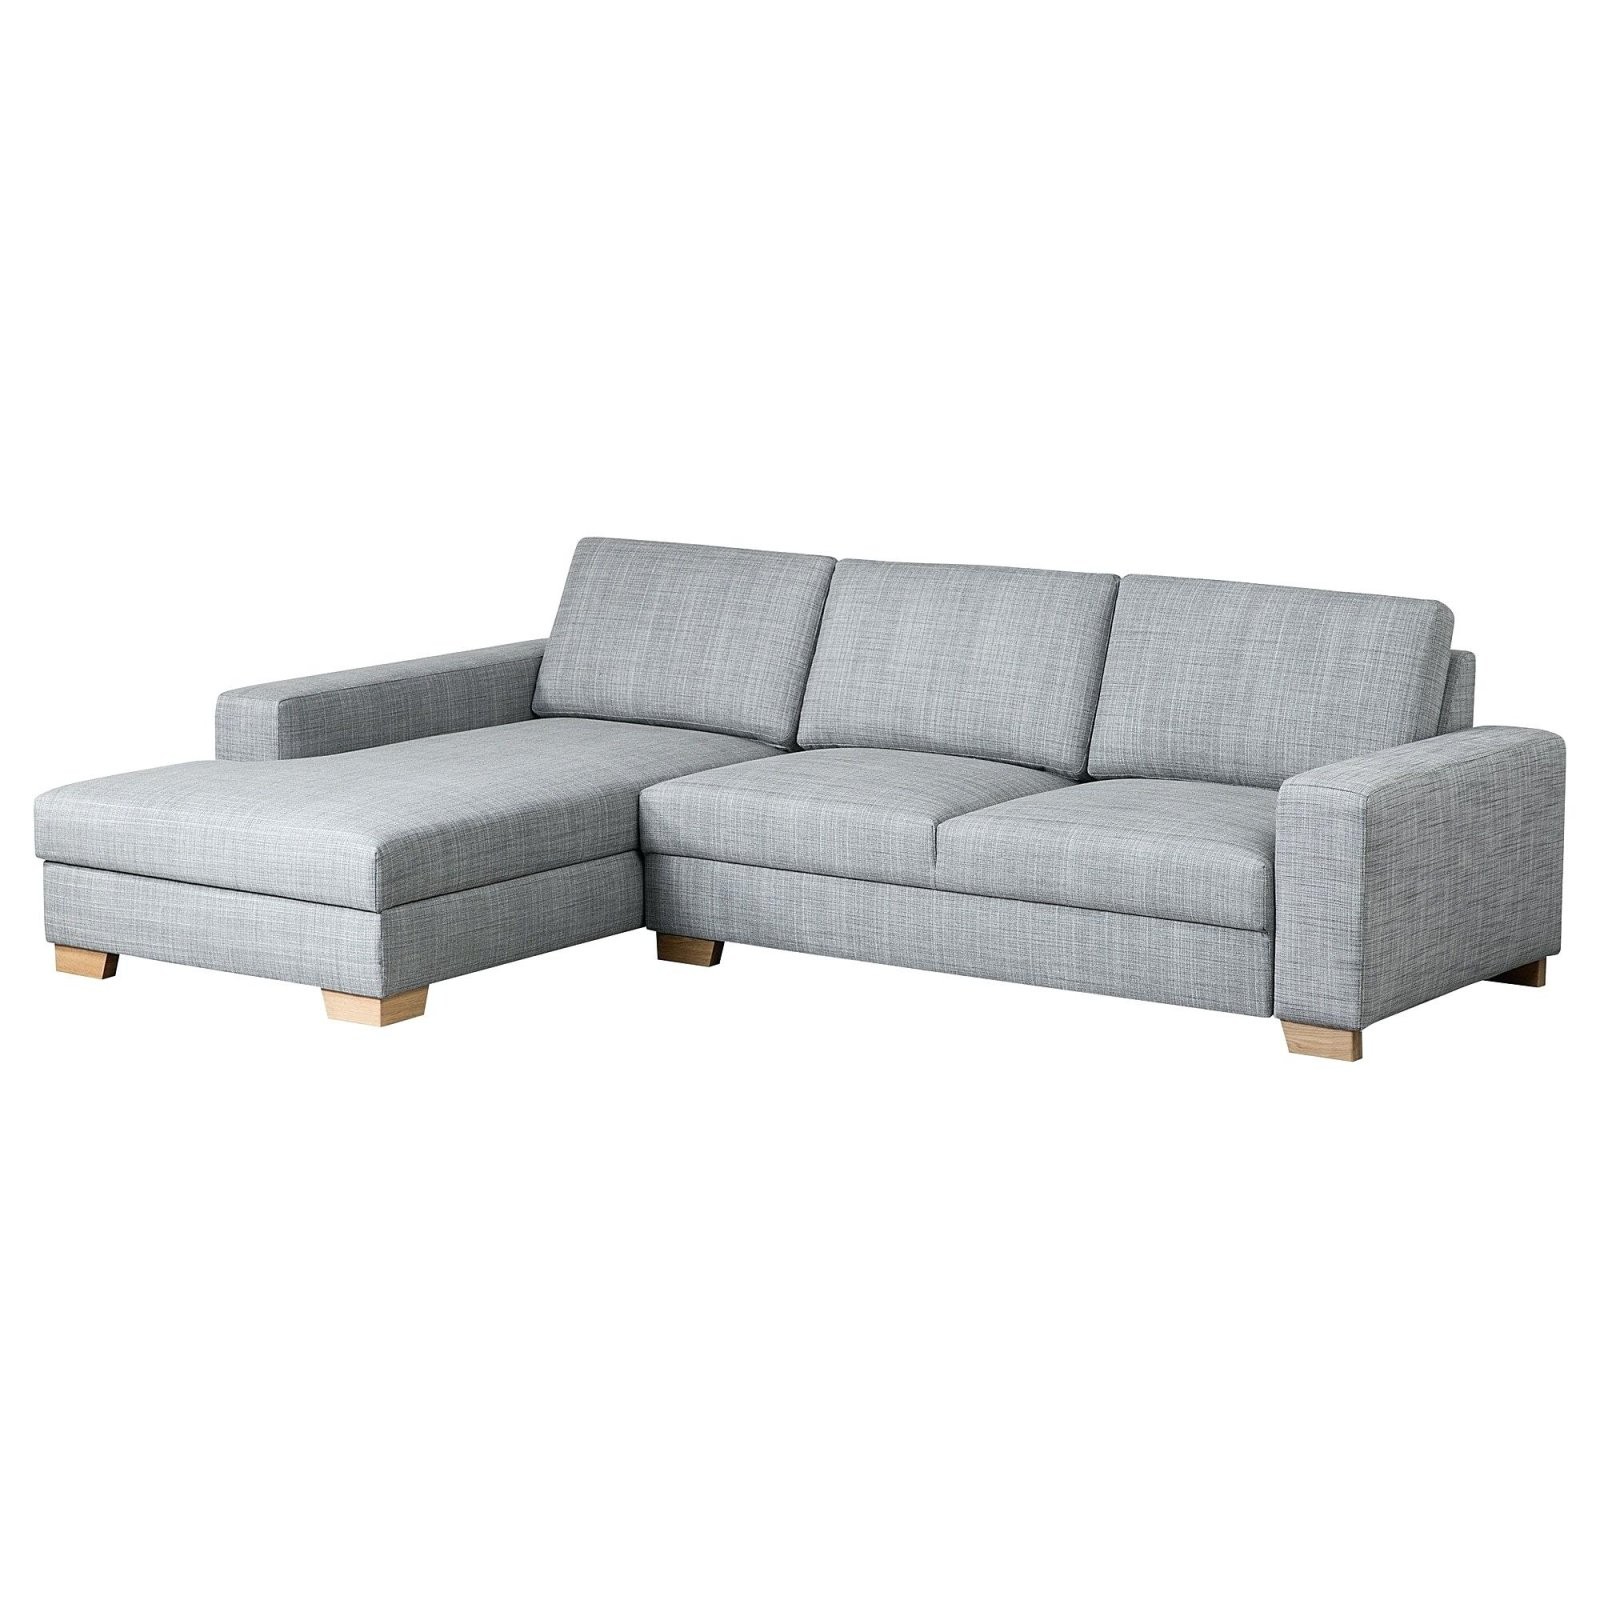 Ikea Wohnlandschaft S Elegant Big Sofa Of Sorvallen Klein Planer von Ikea Wohnlandschaft Mit Schlaffunktion Bild